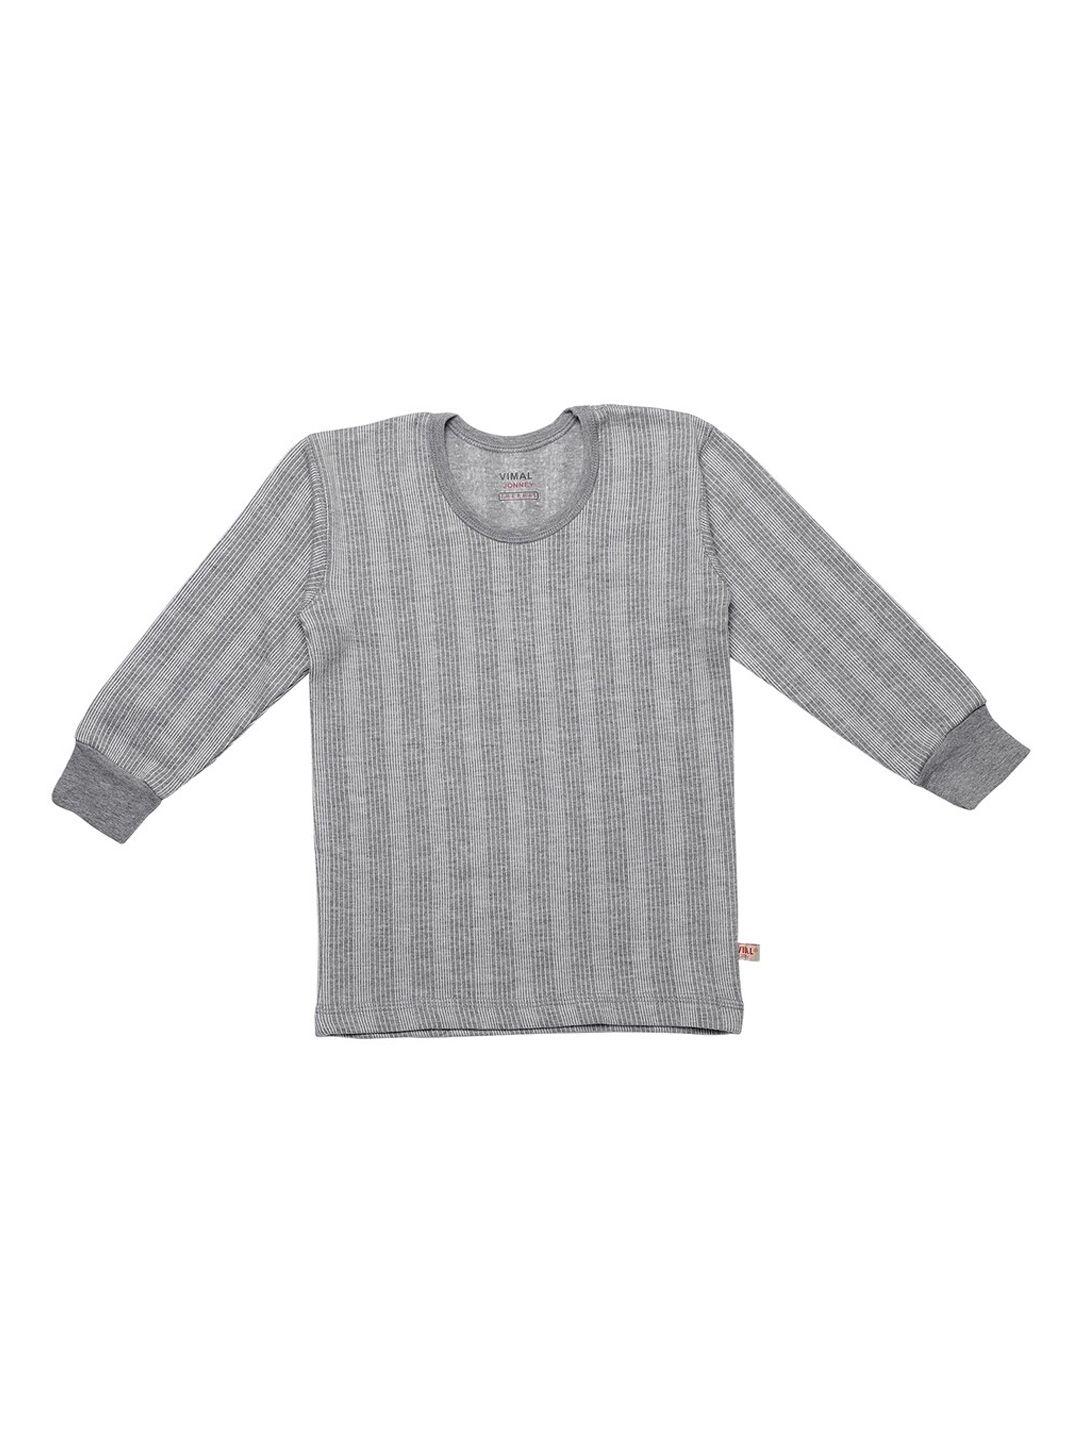 vimal jonney kids grey melange striped thermal t-shirt